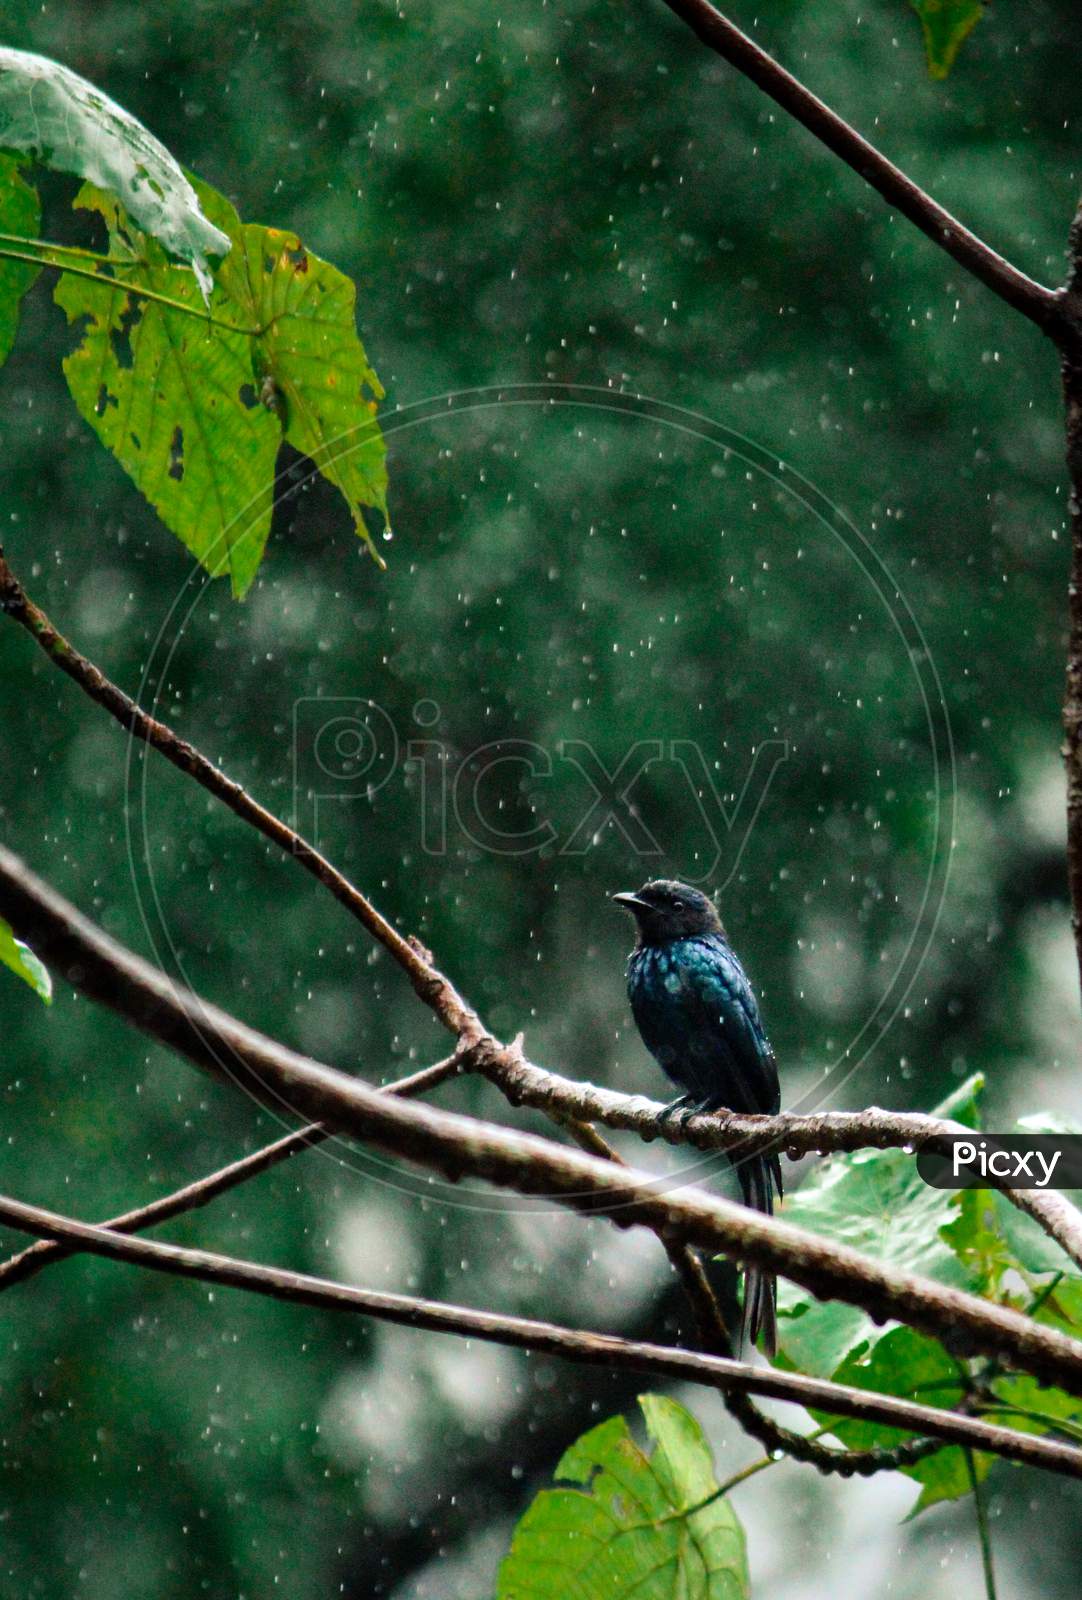 Bird enjoying the rain